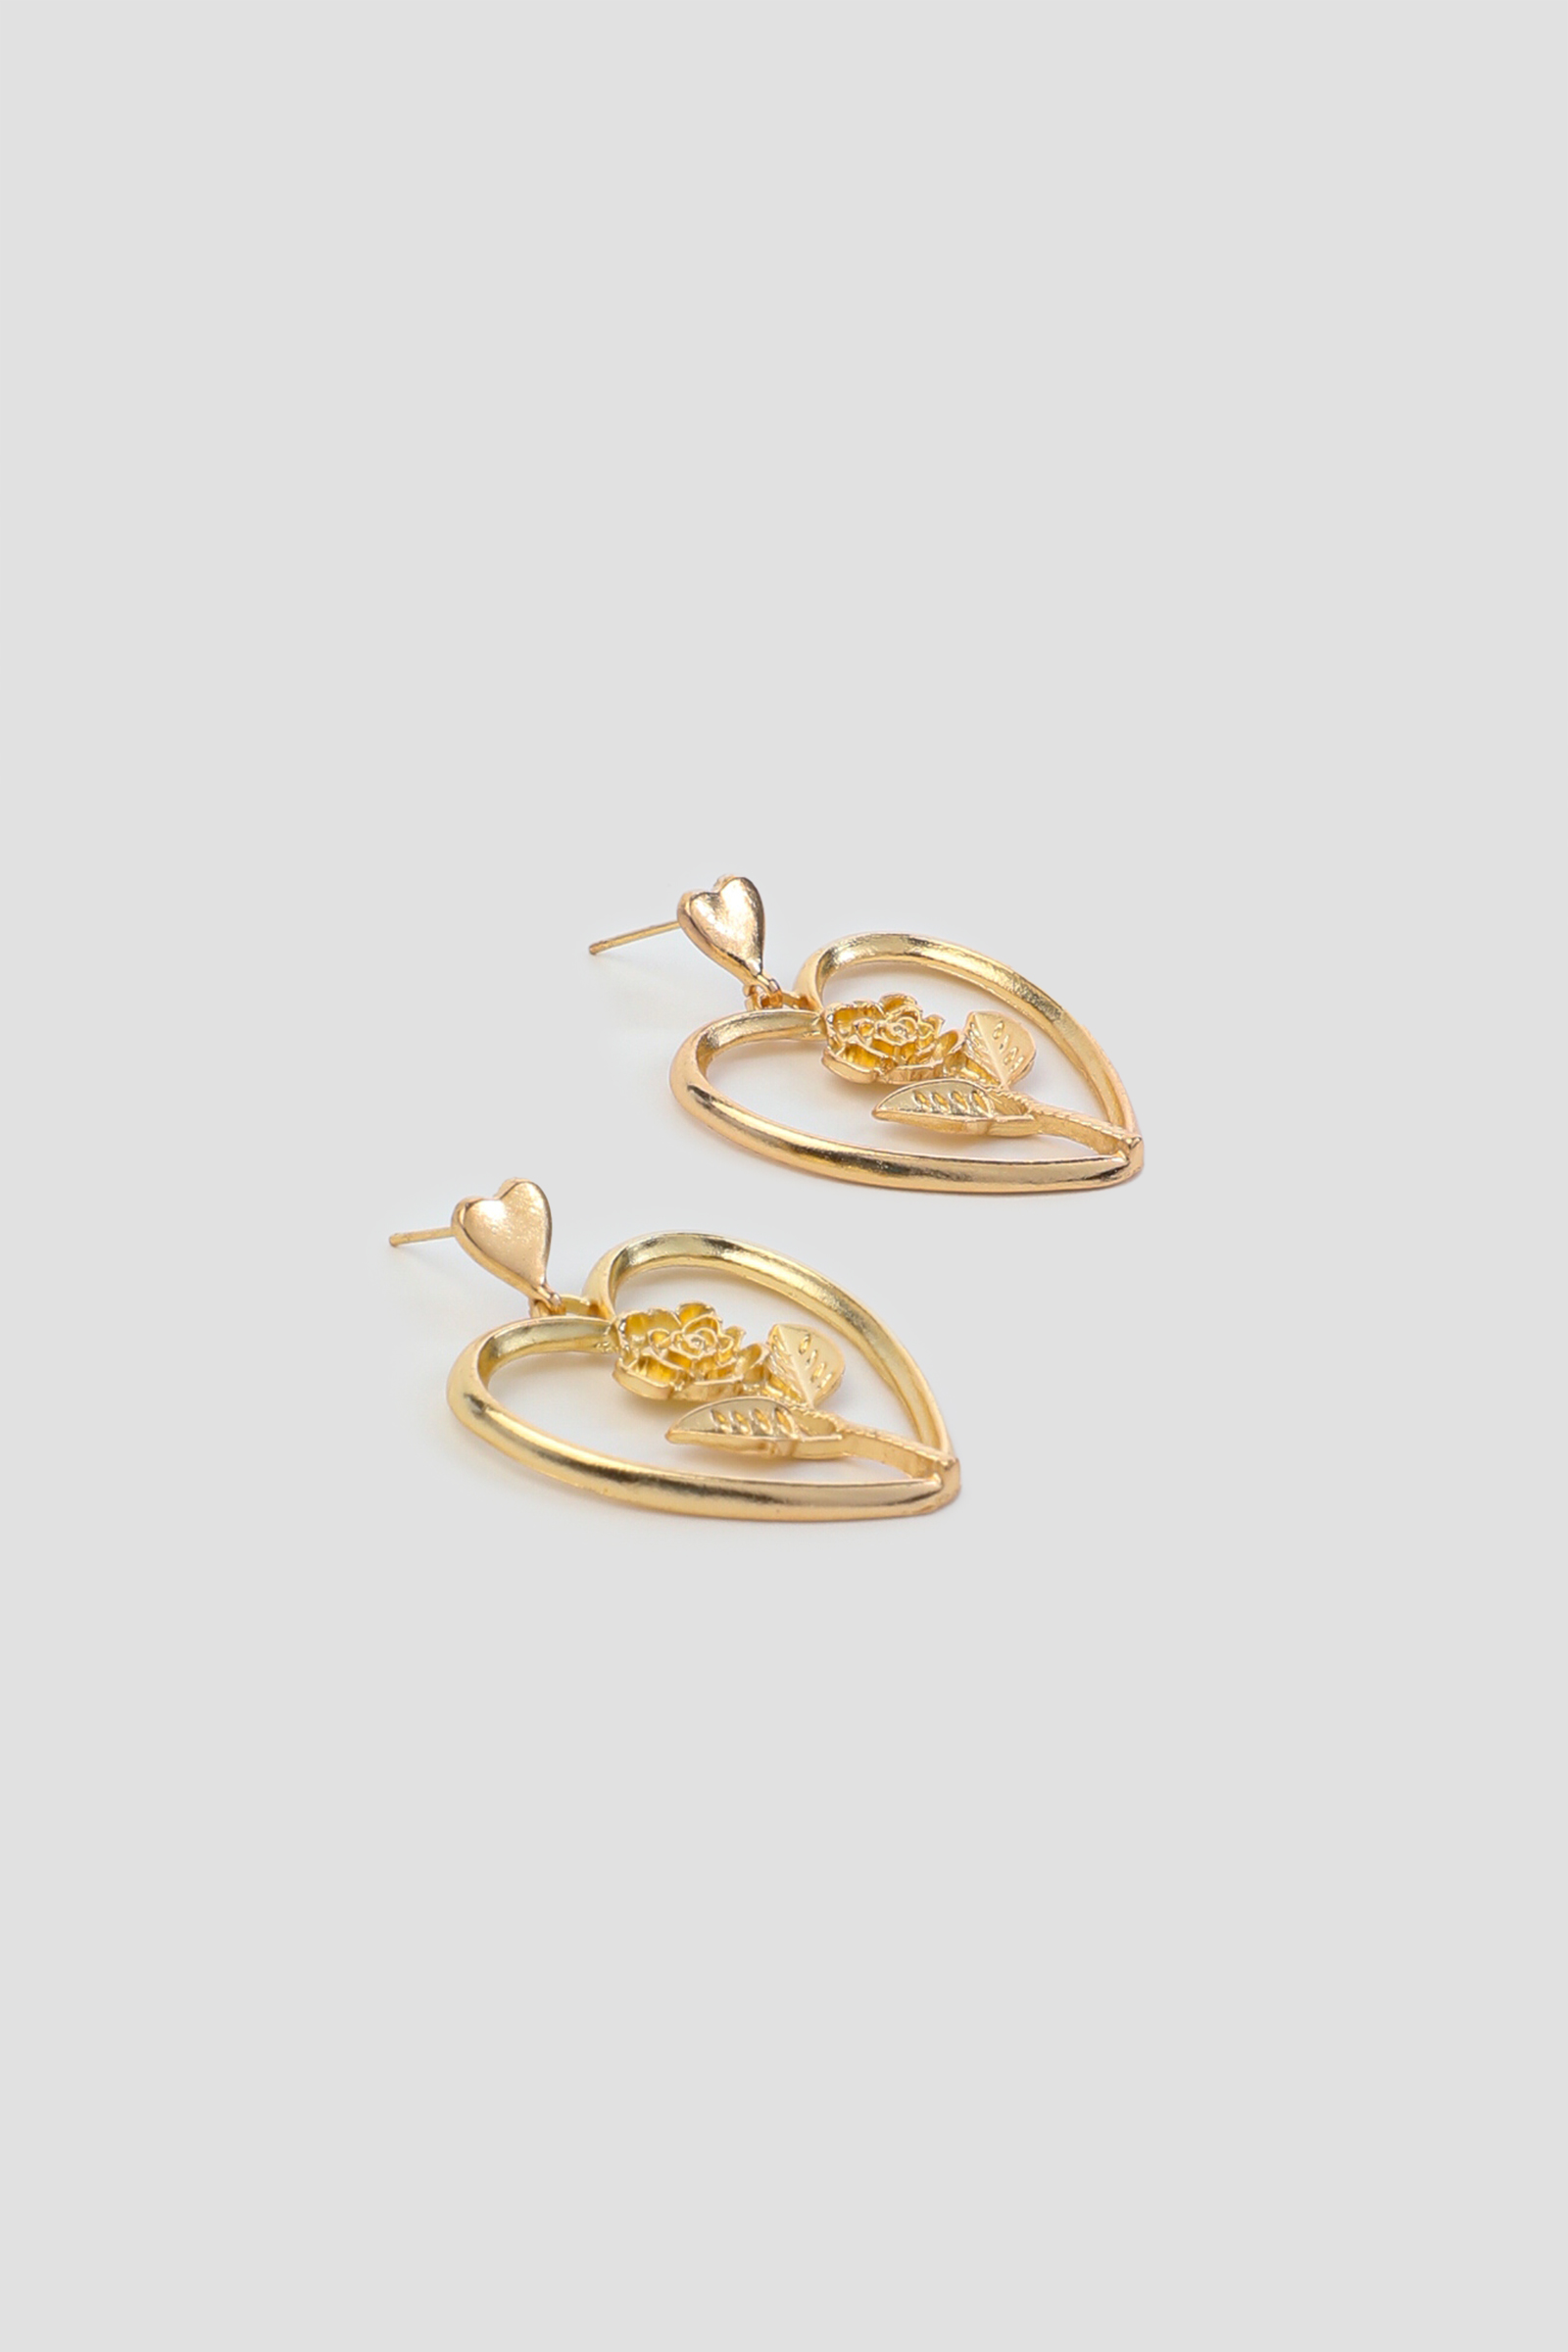 Ardene Heart Earrings with Rose Insert in Gold | Stainless Steel